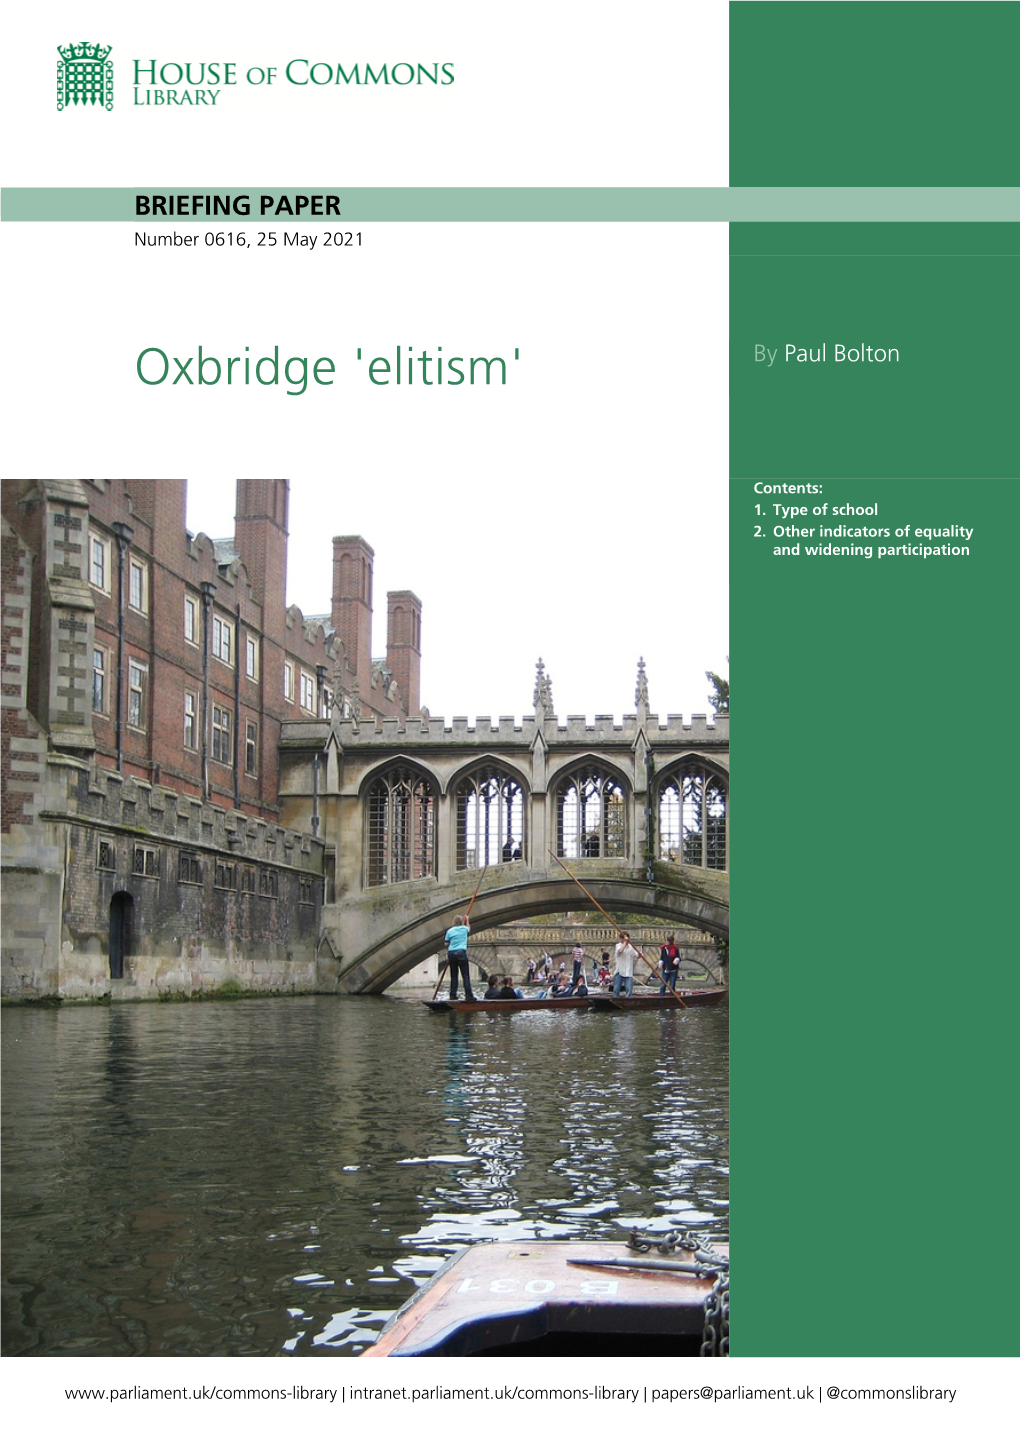 Oxbridge 'Elitism'